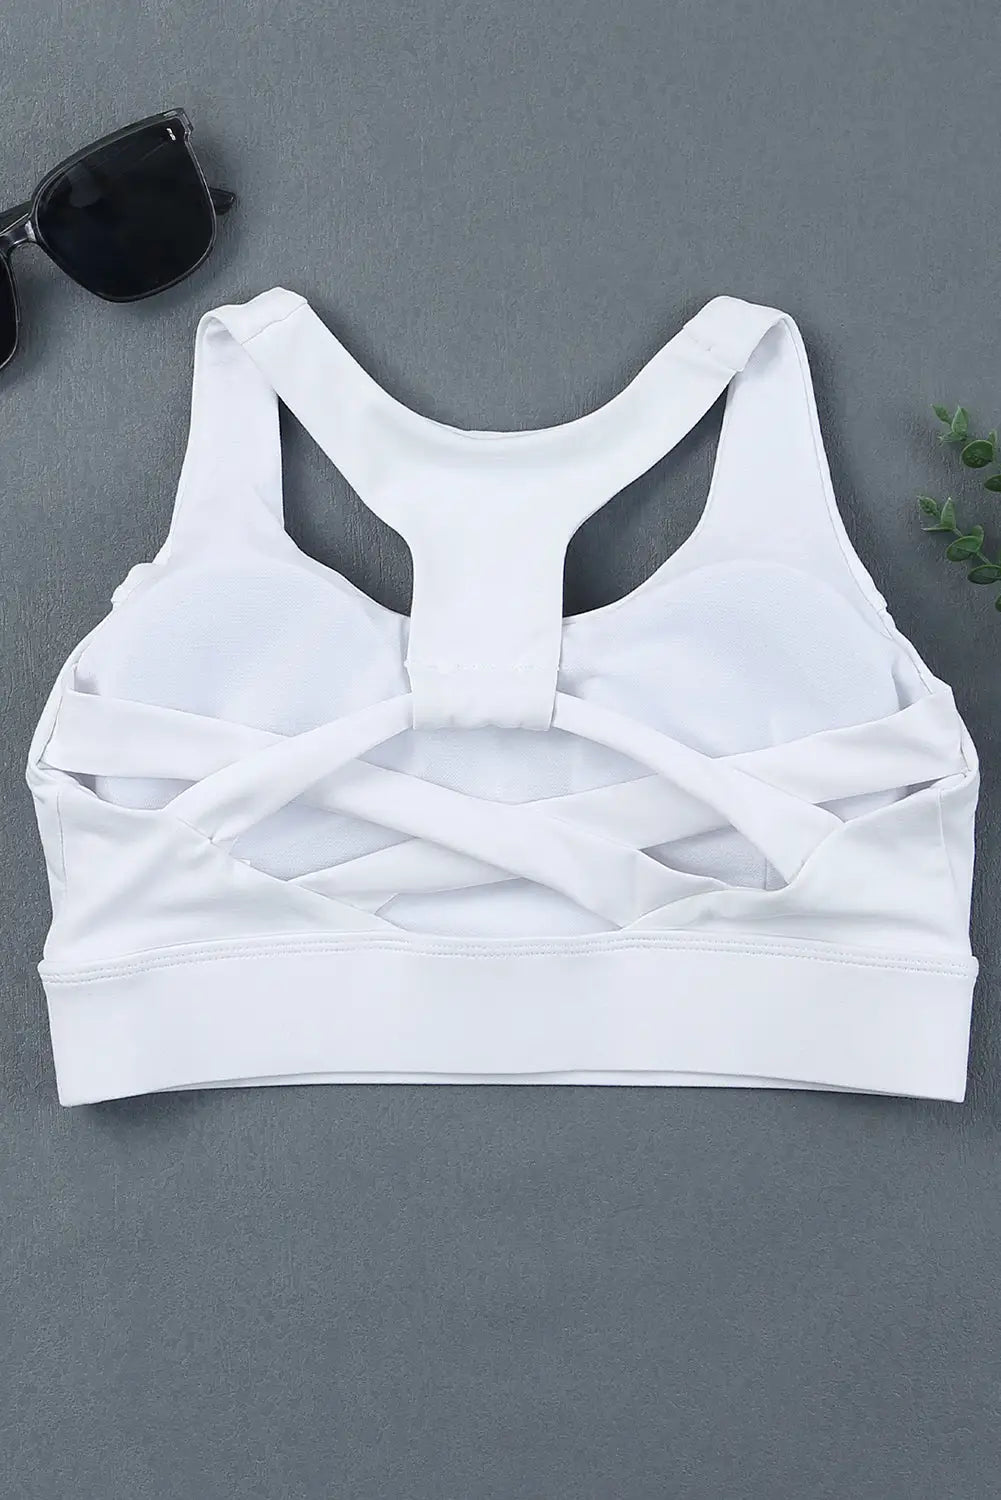 White athletic push up sports bra - bras